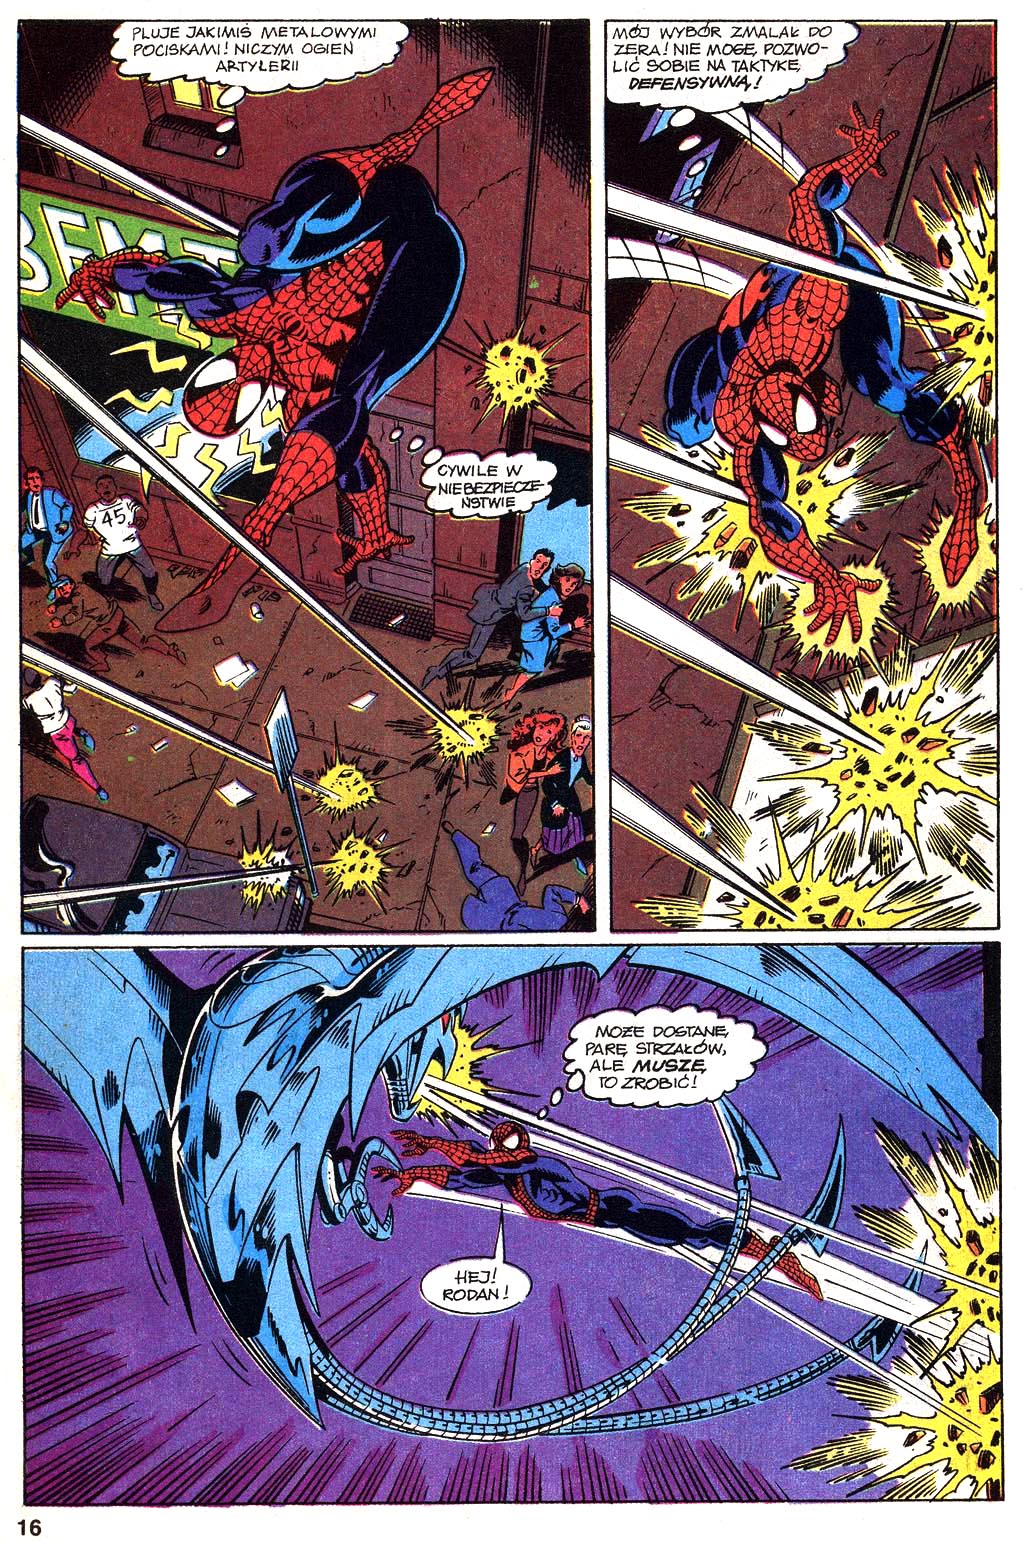 Spider-Man.1994.10.052 - 16.jpg